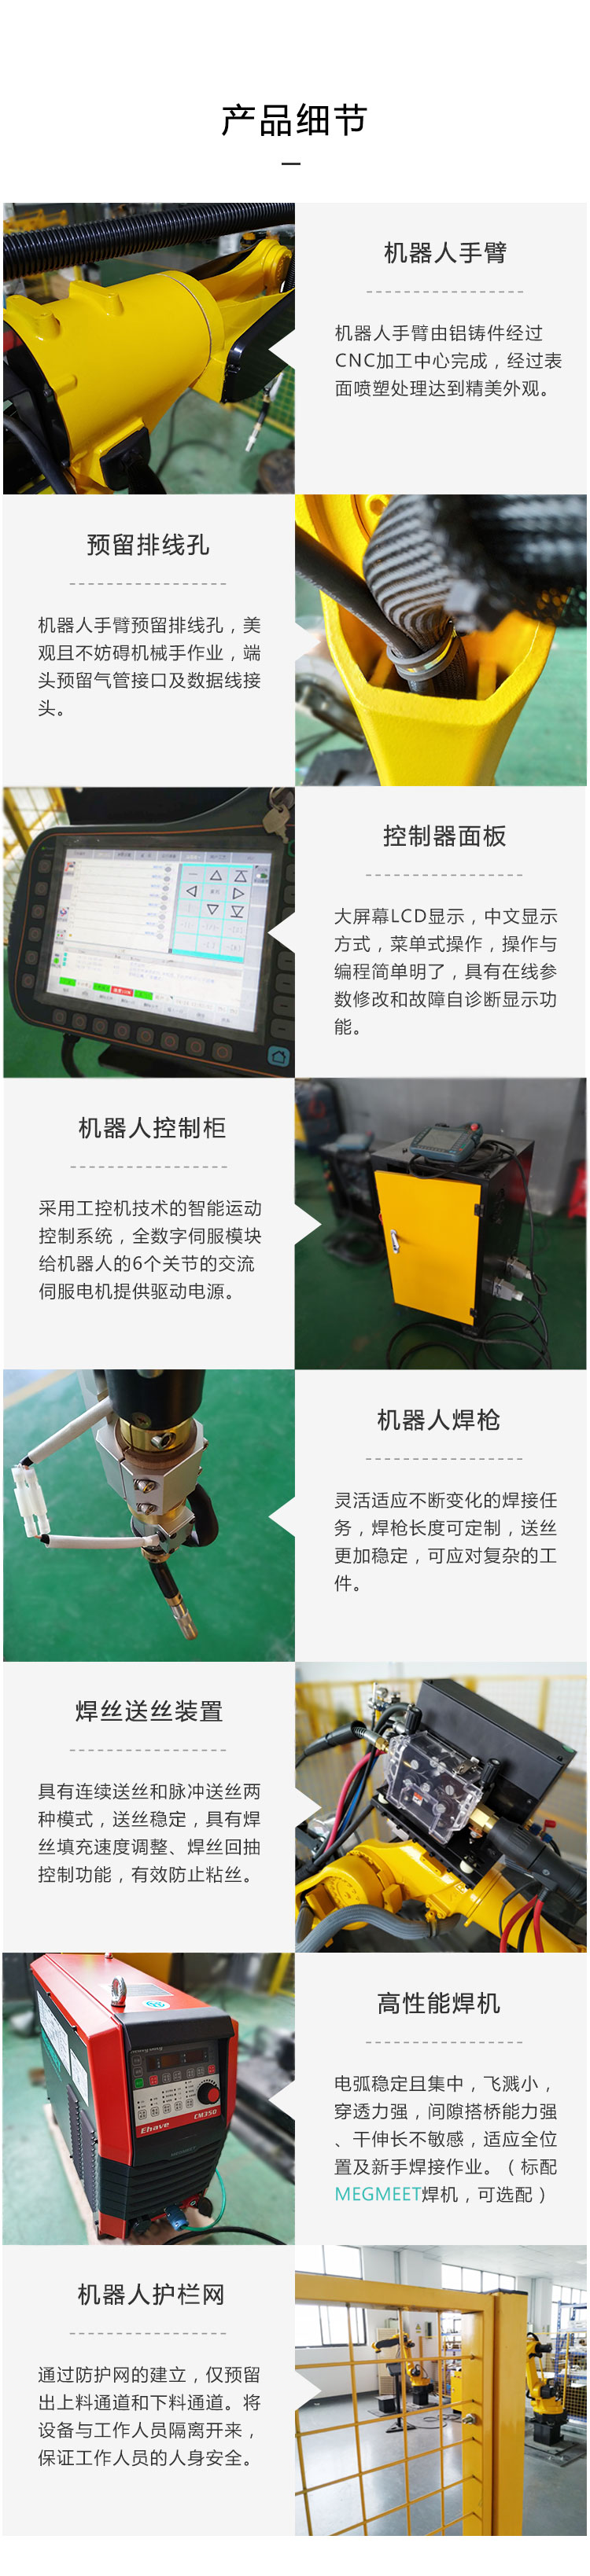 九众九机器人有限公司JZJ06C-160六轴焊接机器人 工业自动化焊接机械手产品细节